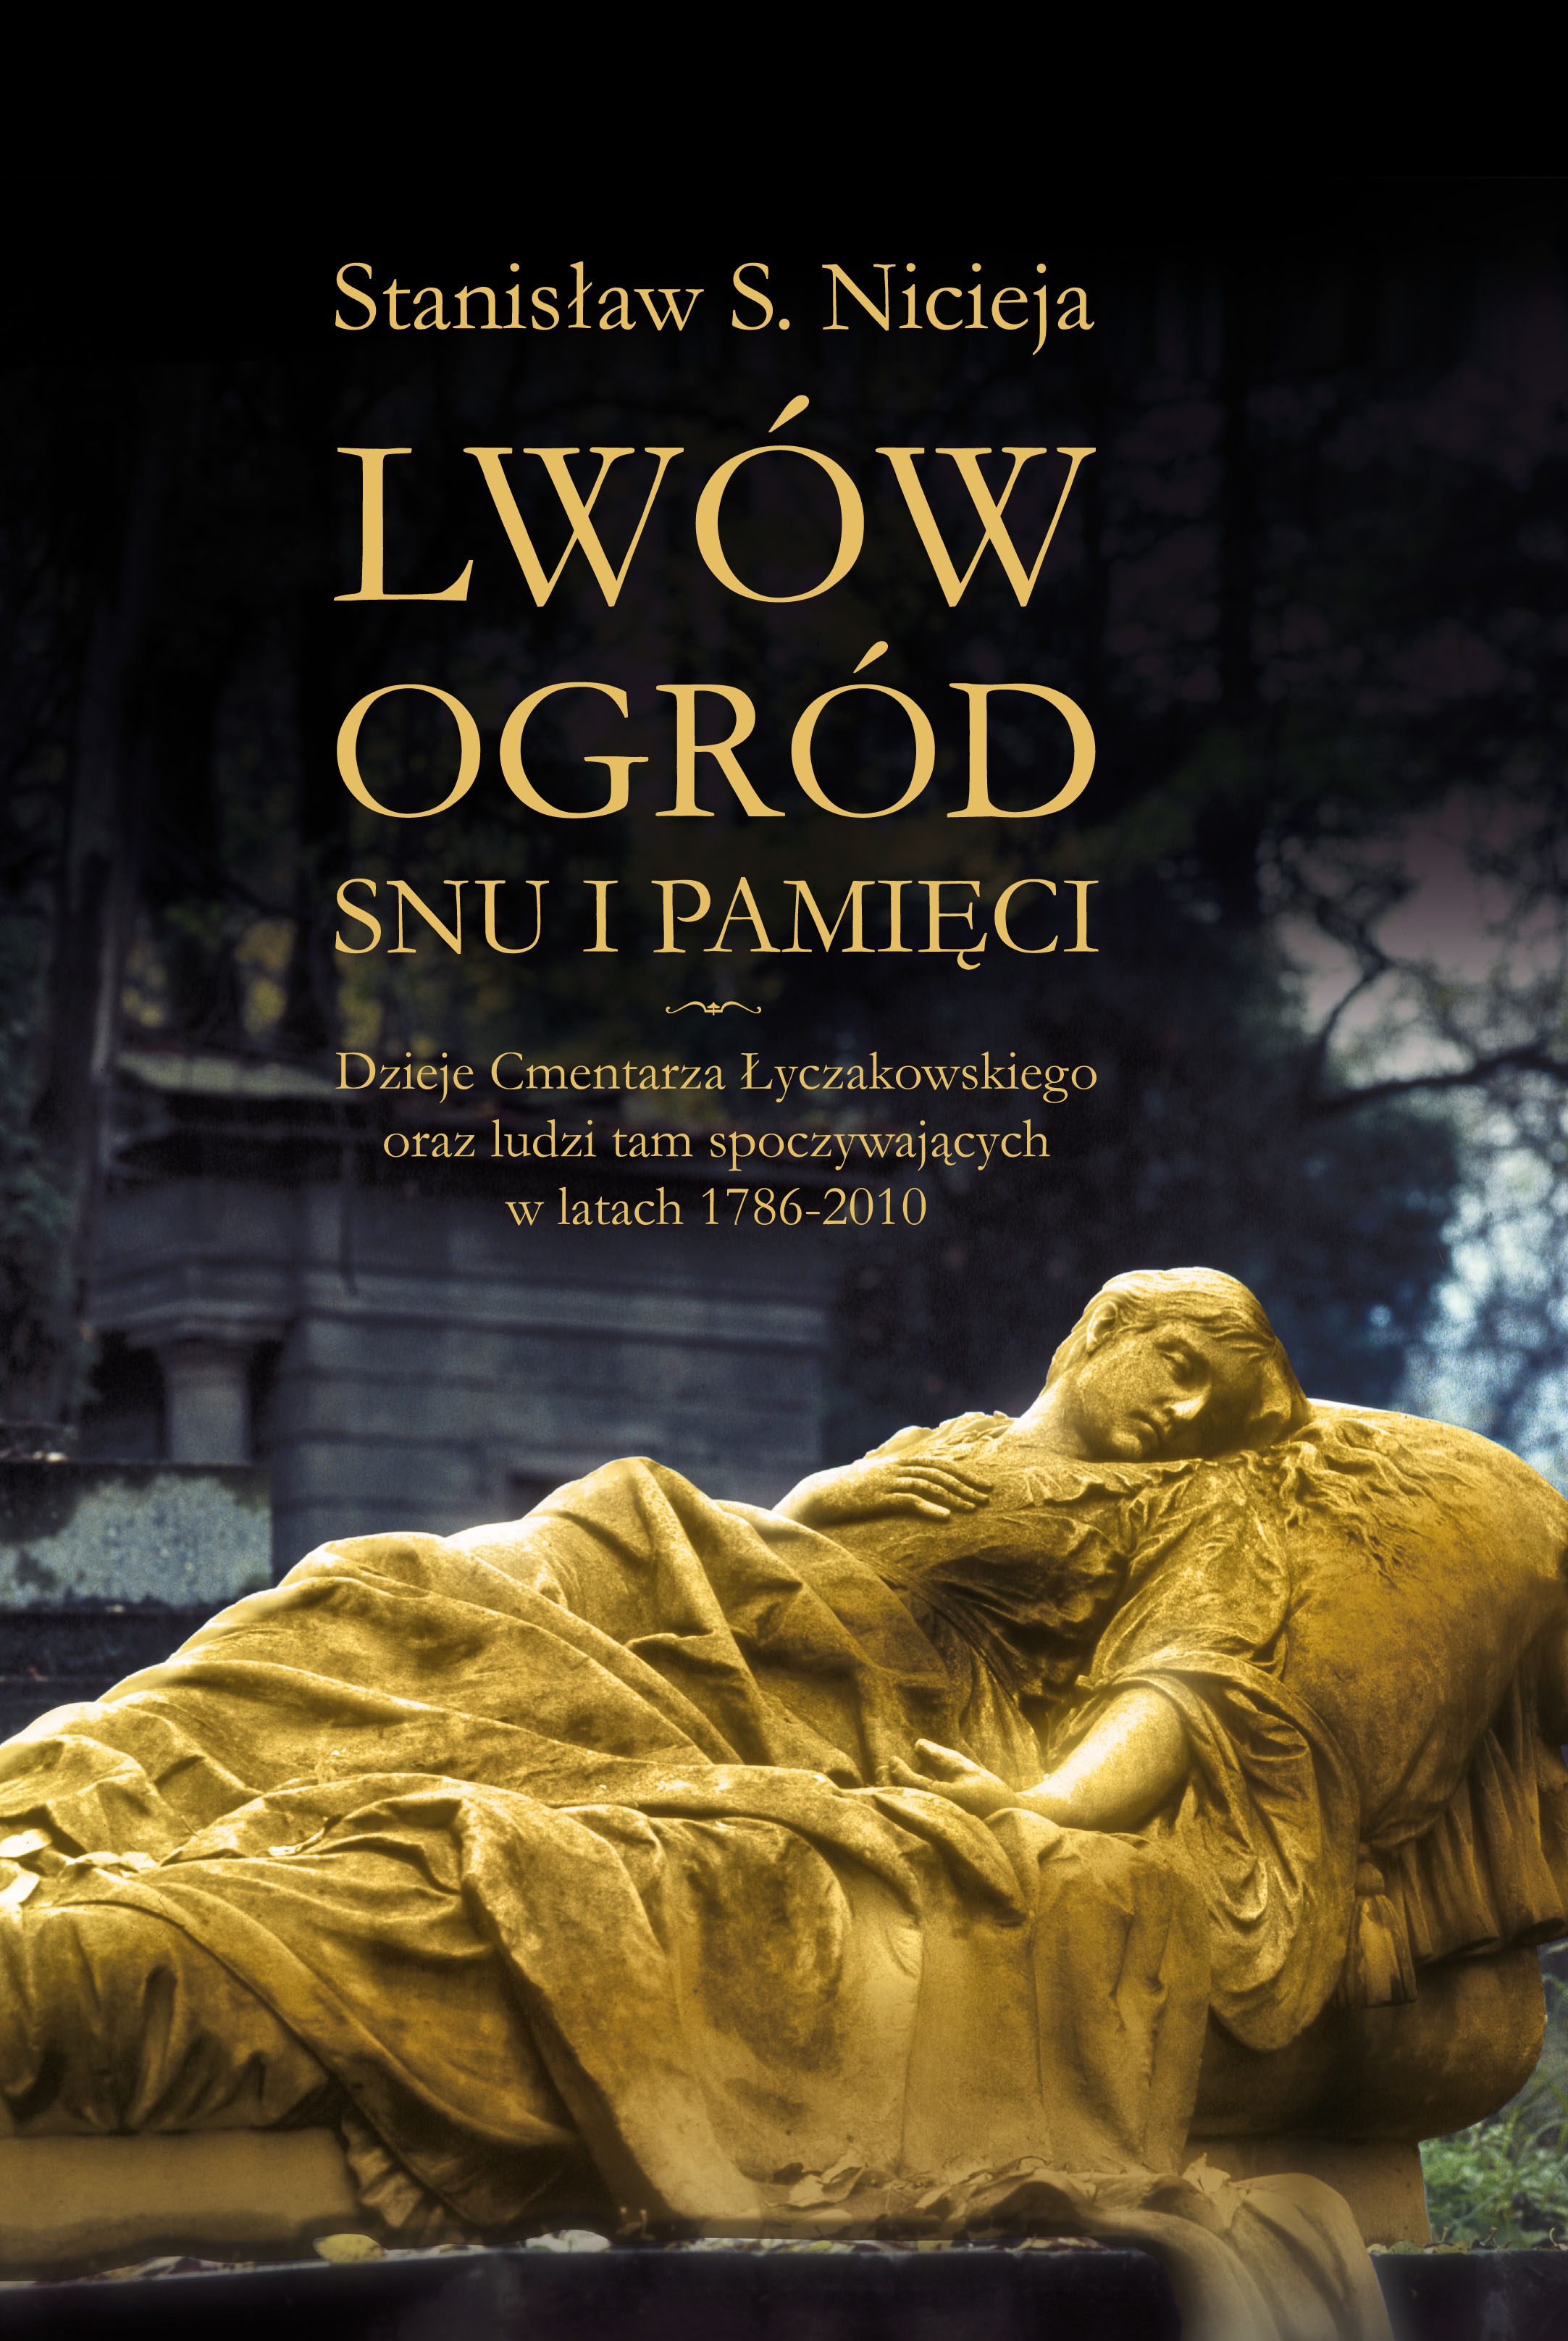 Stanisław S. Nicieja, "Lwów - ogród snu i pamięci"